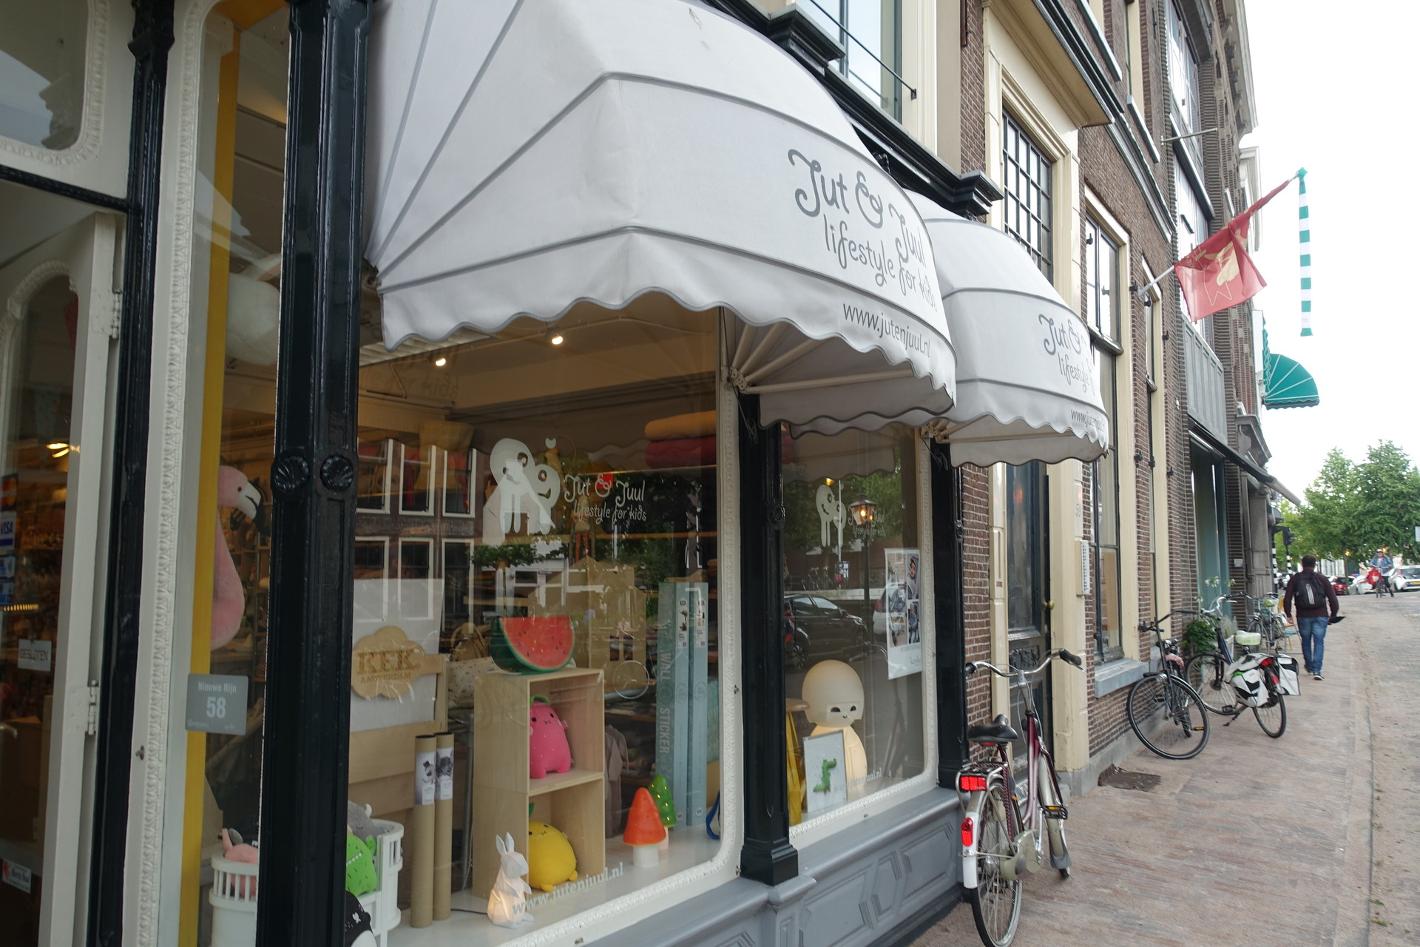 Foto Jut en Juul in Leiden, Winkelen, Gezellig shoppen - #1